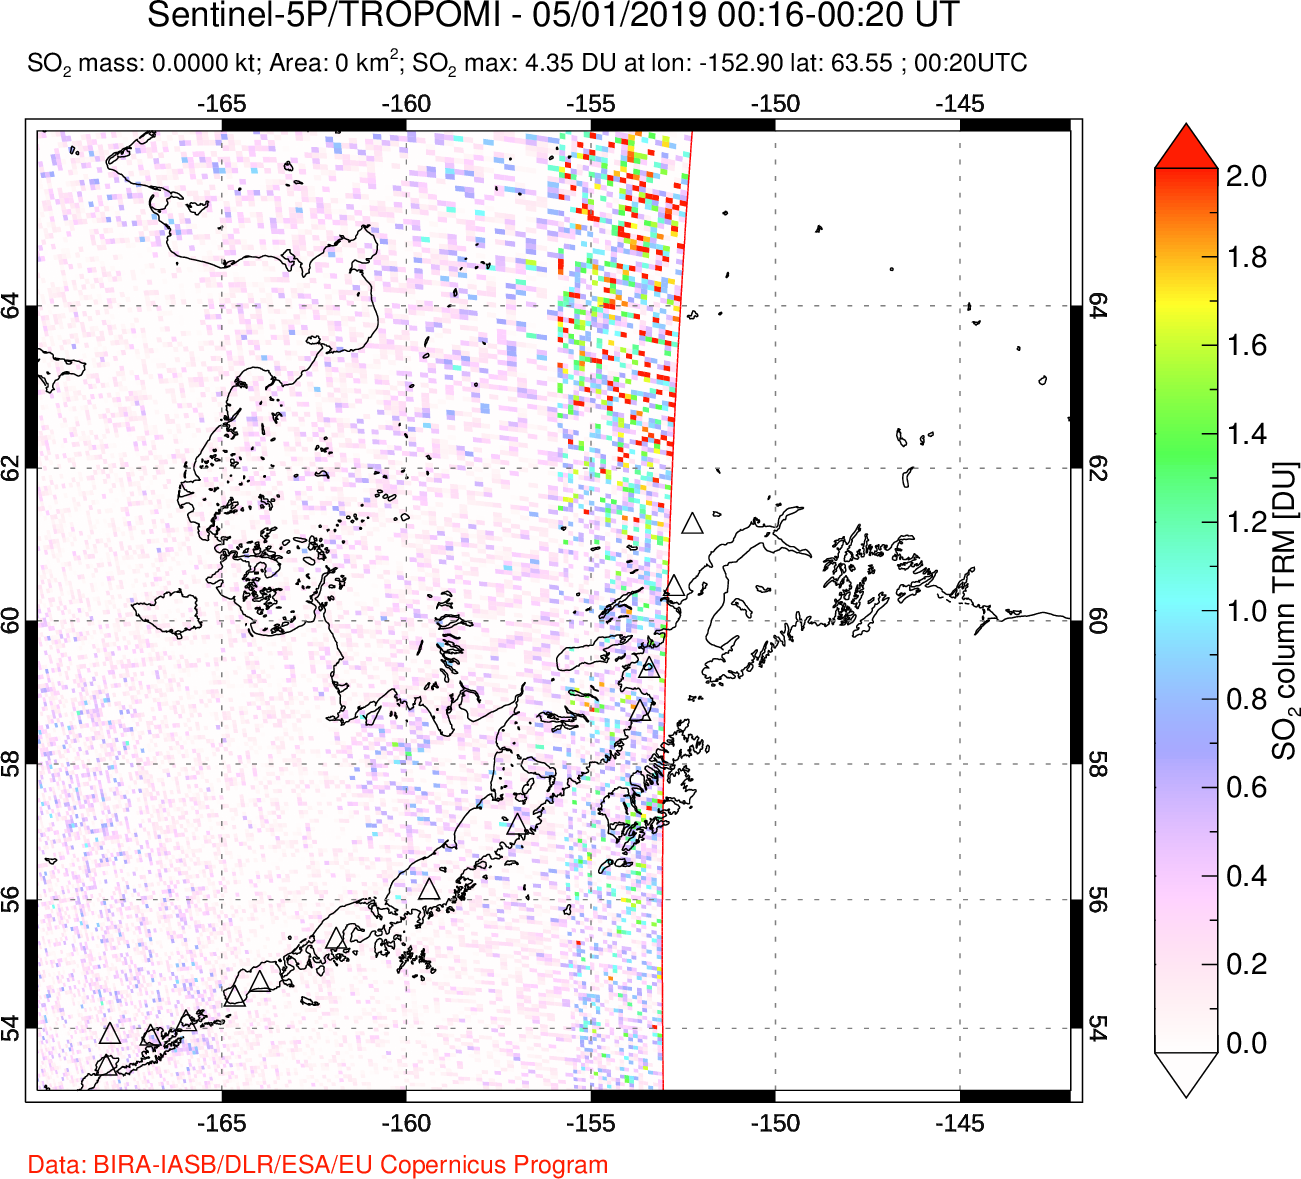 A sulfur dioxide image over Alaska, USA on May 01, 2019.